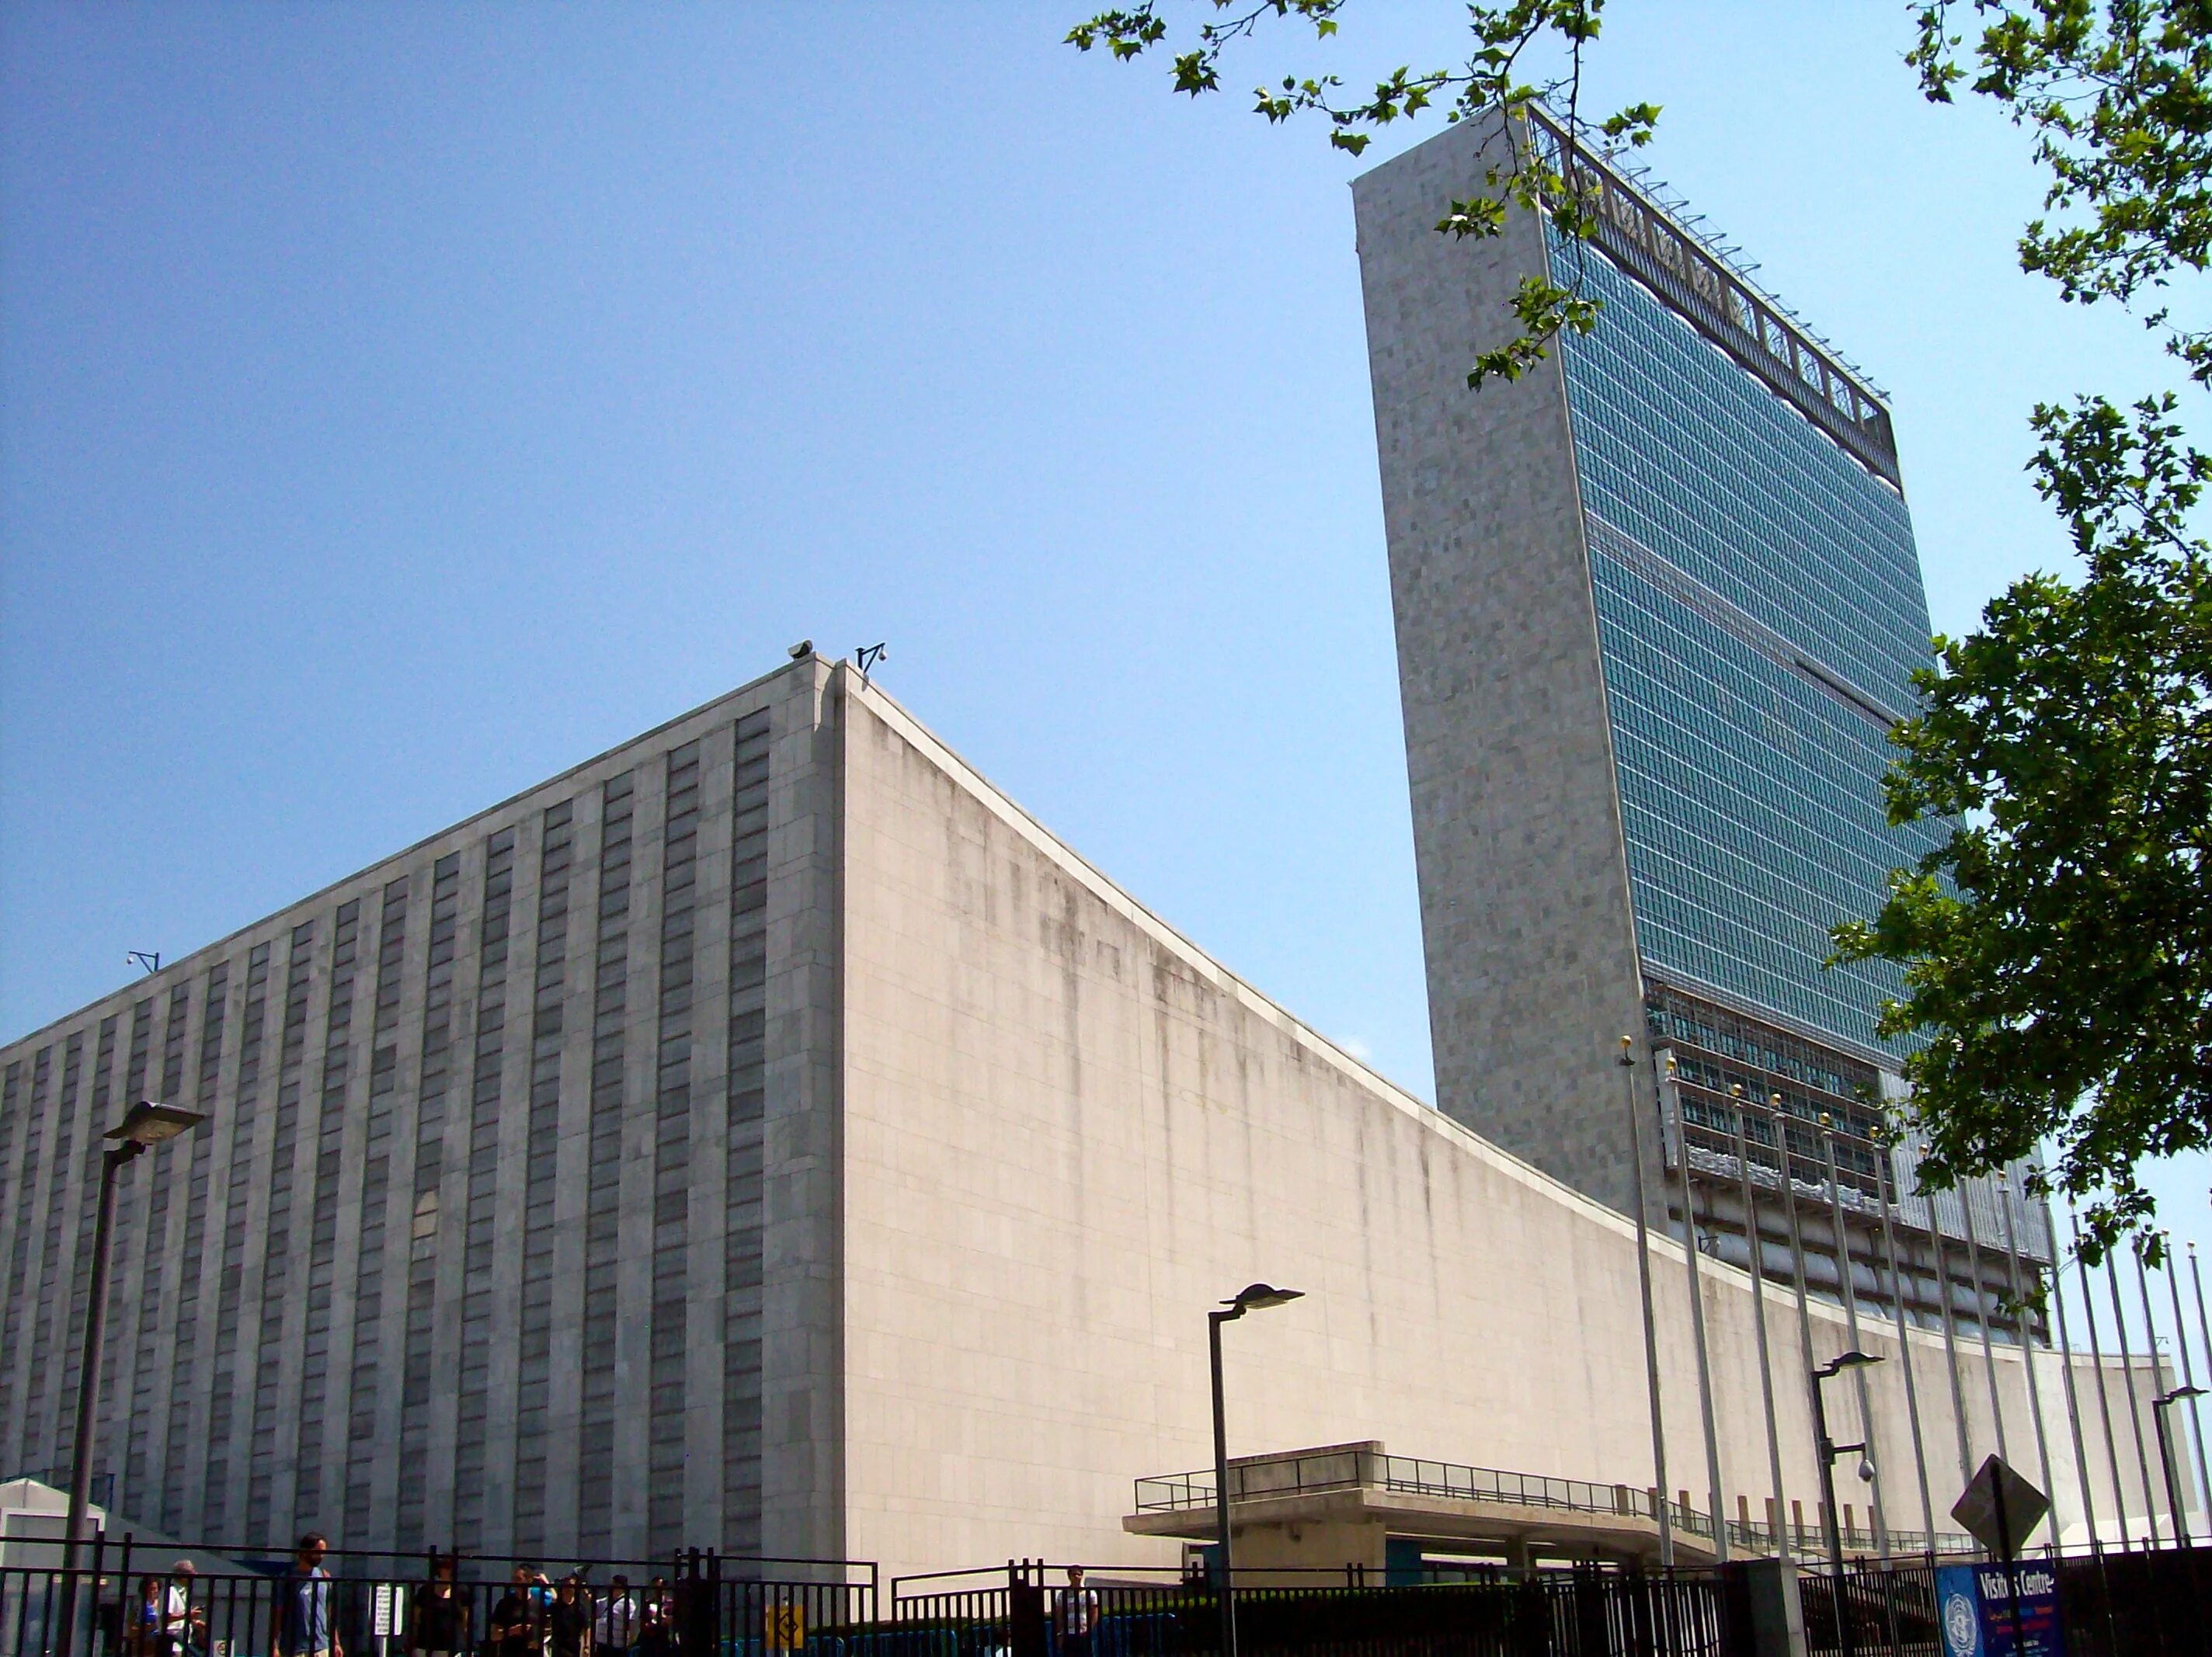 Город штаб оон. Штаб-квартира ООН В Нью-Йорке. Здание ООН В Нью-Йорке. United Nations Secretariat building штаб-квартира ООН. Здание ООН В Нью-Йорке 1952.